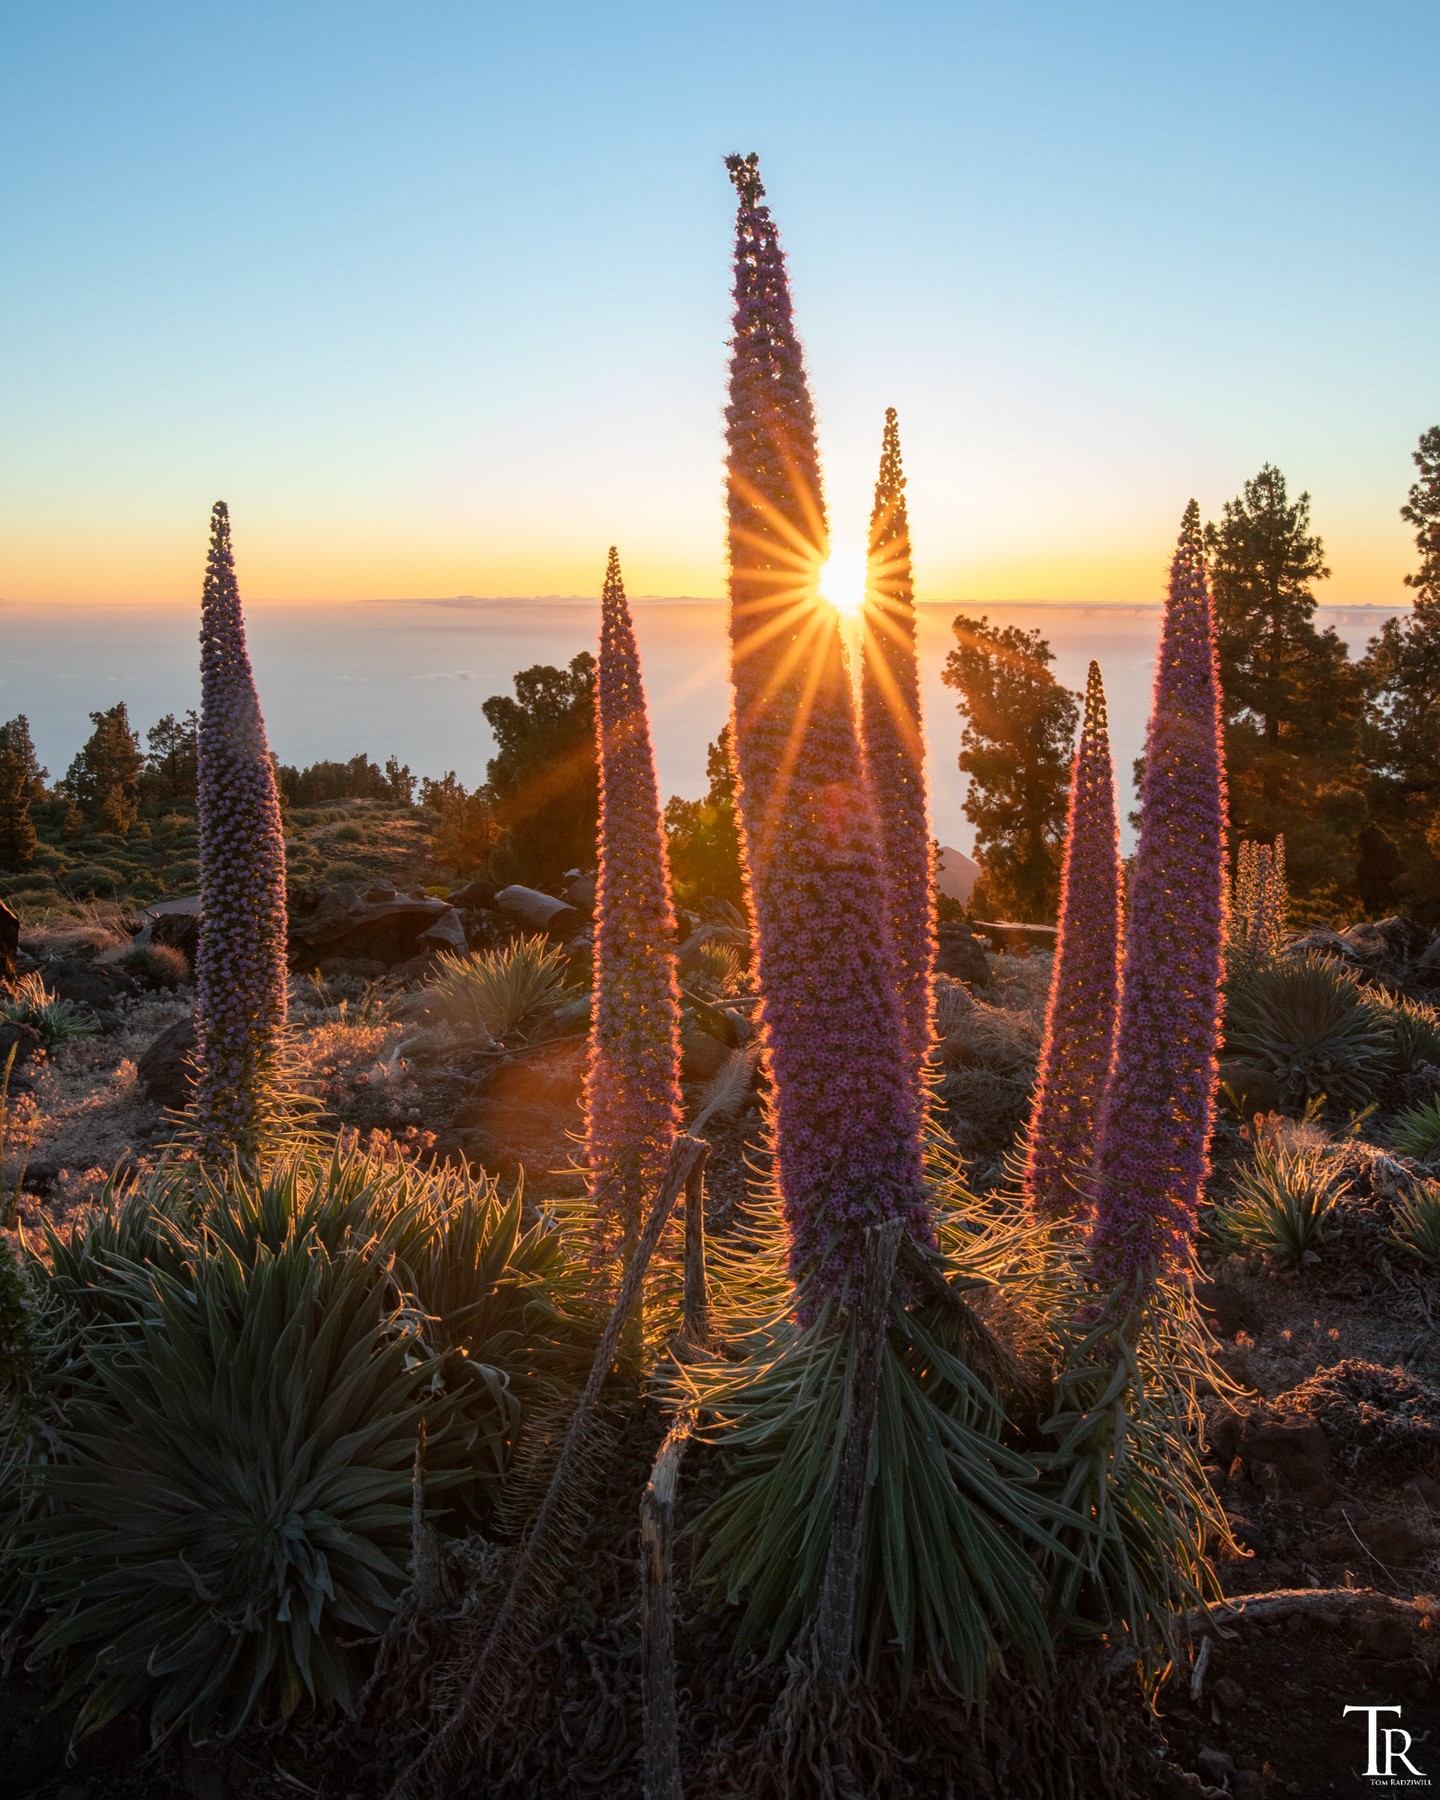 Die fantastischen und hohen Tajinasten auf La Palma. Diese auf La Palma endemischen Arten können 2-3 Meter hoch werden und blühen in einem relativ kurzen Zeitraum im Jahr, und dann auch noch auf über 2.000m Höhe. Sowohl tagsüber, als auch nachts oder zum Sonnenuntergang ein wunderbares Fotomotiv. 🌸🌞😎
.
.
.
.
.
#canaryislands #canarias #ig_canaryislands #ig_canarias #kanarischeinseln #chasinglight #nature_lovers #dawn #lapalma #tajinaste #moodygrams #eveningvibes #sunset_vision #wanderlust #landscape_lover #twilight #bestplacesonplanetearth #earthofficial #laislabonita #amazinglight #perfectmoment #colorsofthesky #lovemyjob #canaryislands #backlight #canon_photos #shotwithlove #wiesnernews #visitlapalma #eveningvibes 
@lapalmaislabonitaoficial